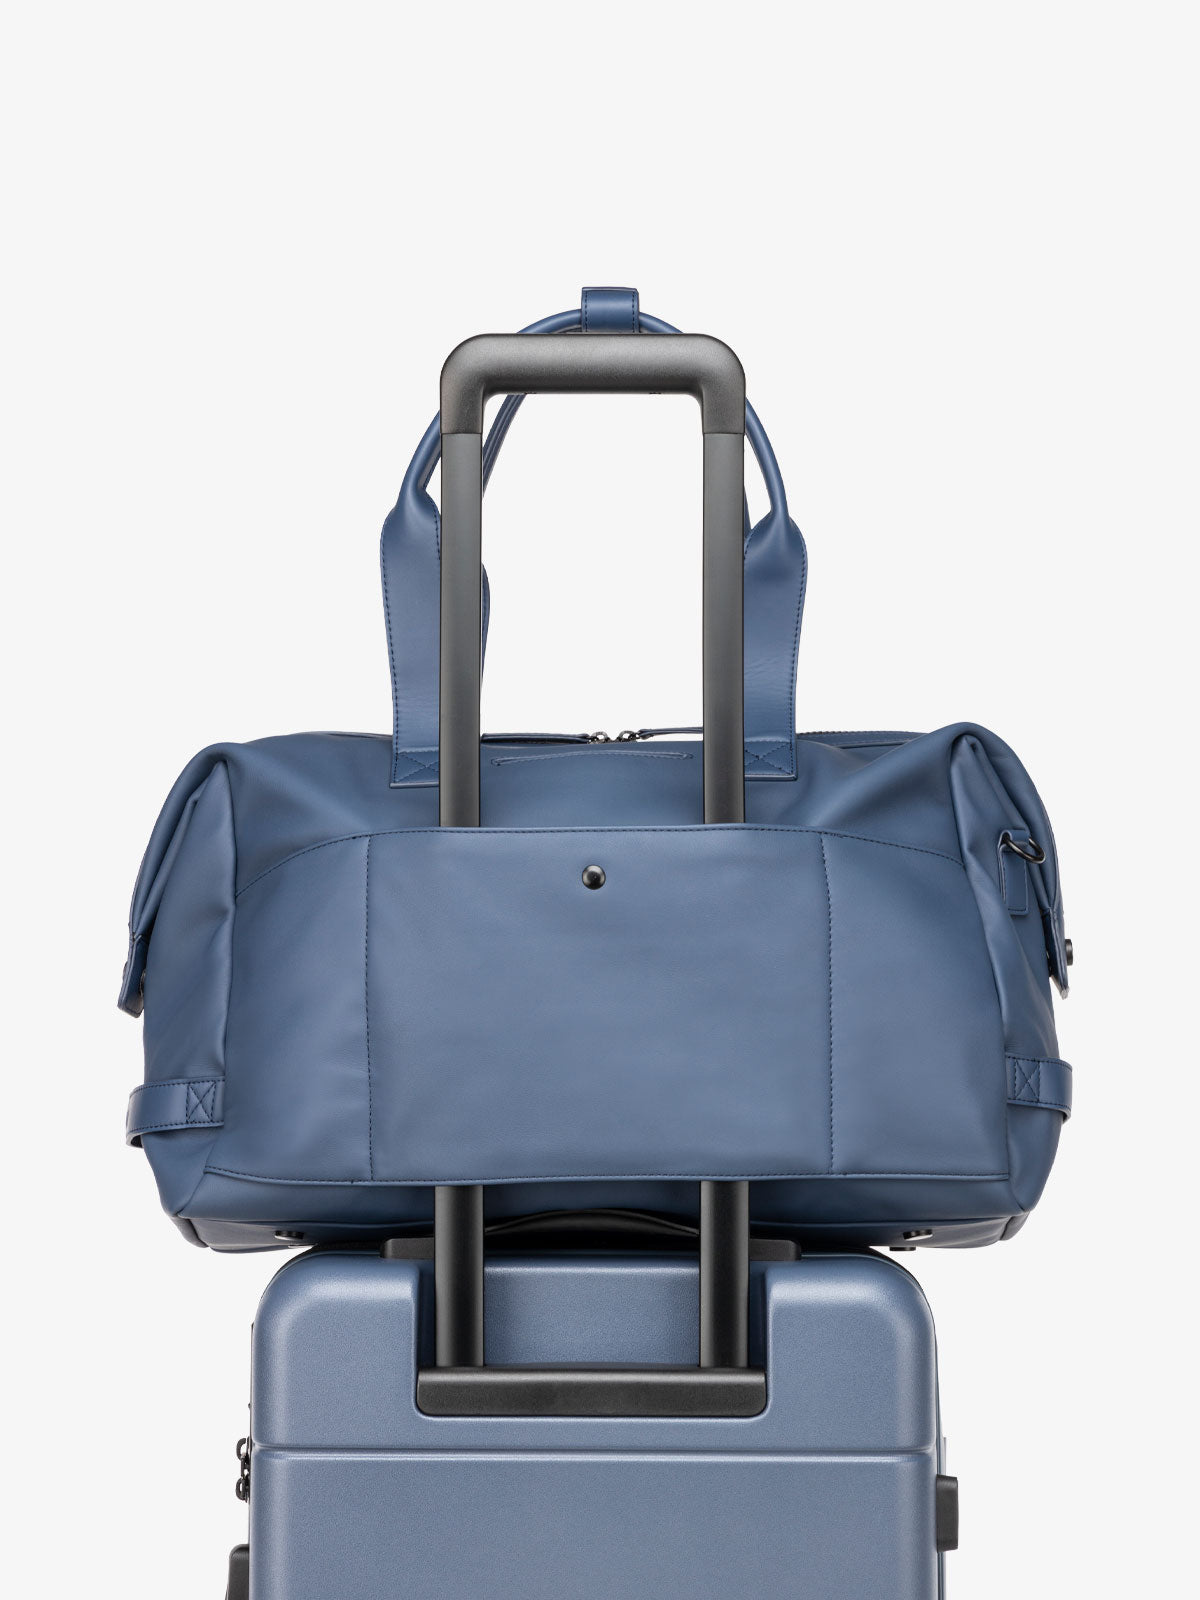 CALPAK Hue duffel bag interior compartments and laptop pocket